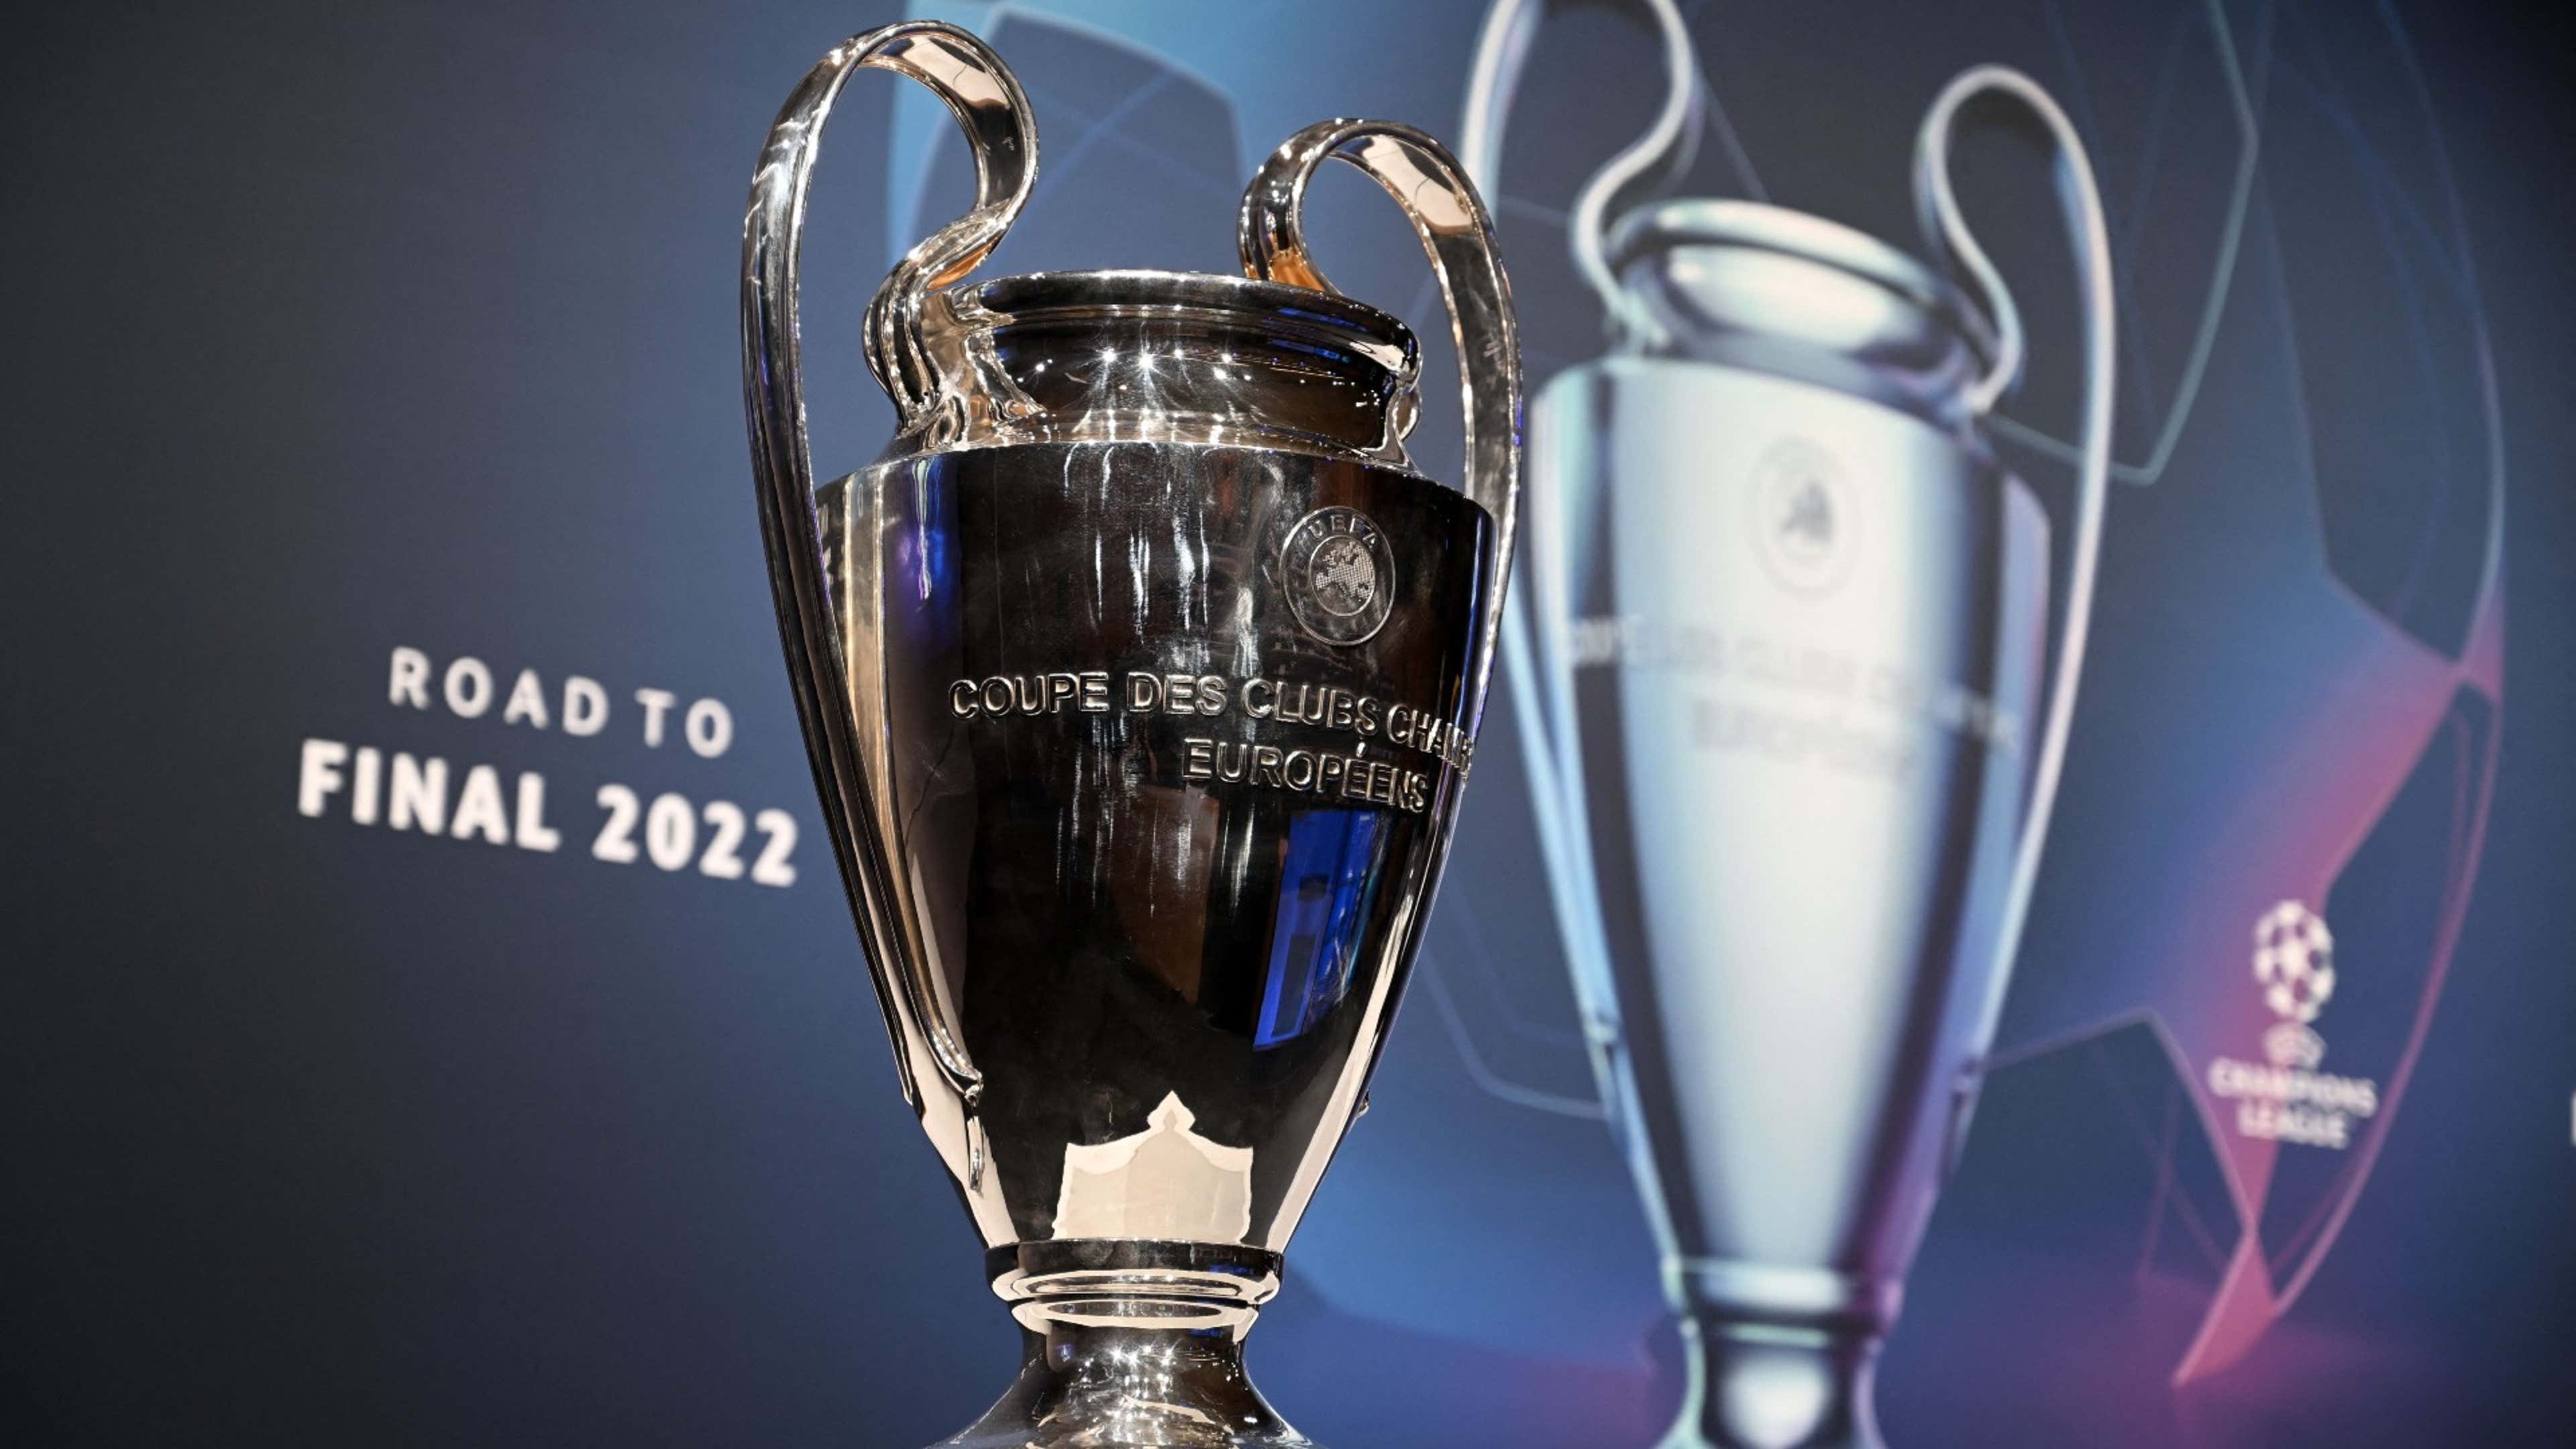 Champions League: Confira os jogos e resultados das partidas de ida das  semifinais - Champions League - Br - Futboo.com